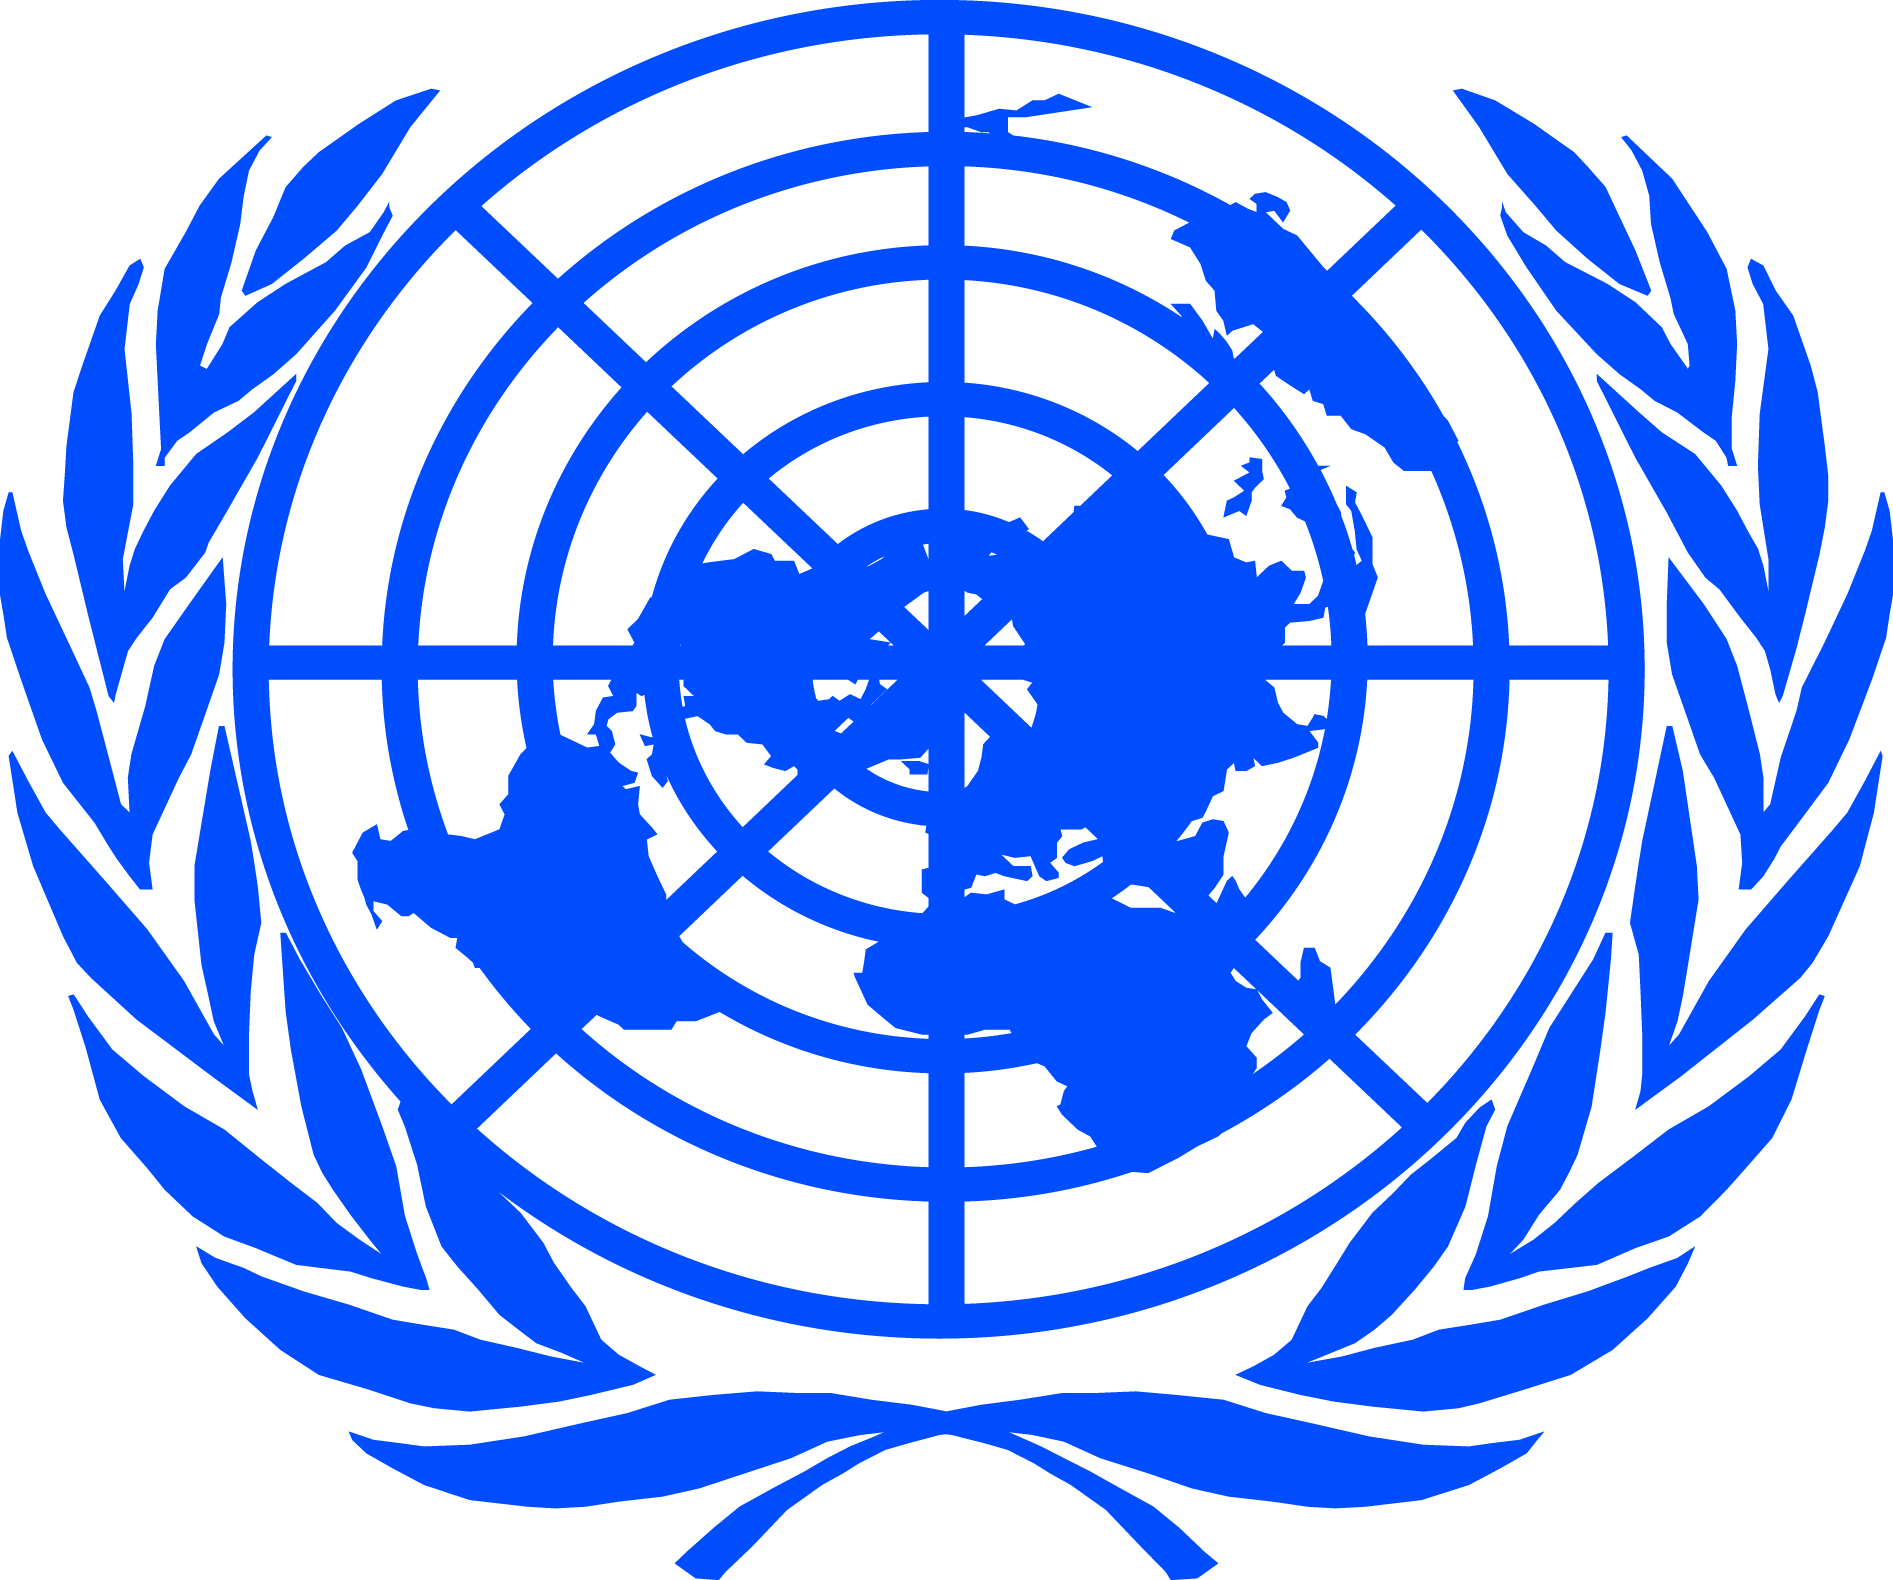 Оон одобрила. Всемирная организация ООН. Международные организации ООН. Организация Объединенных наций (ООН). Совет безопасности ООН флаг.